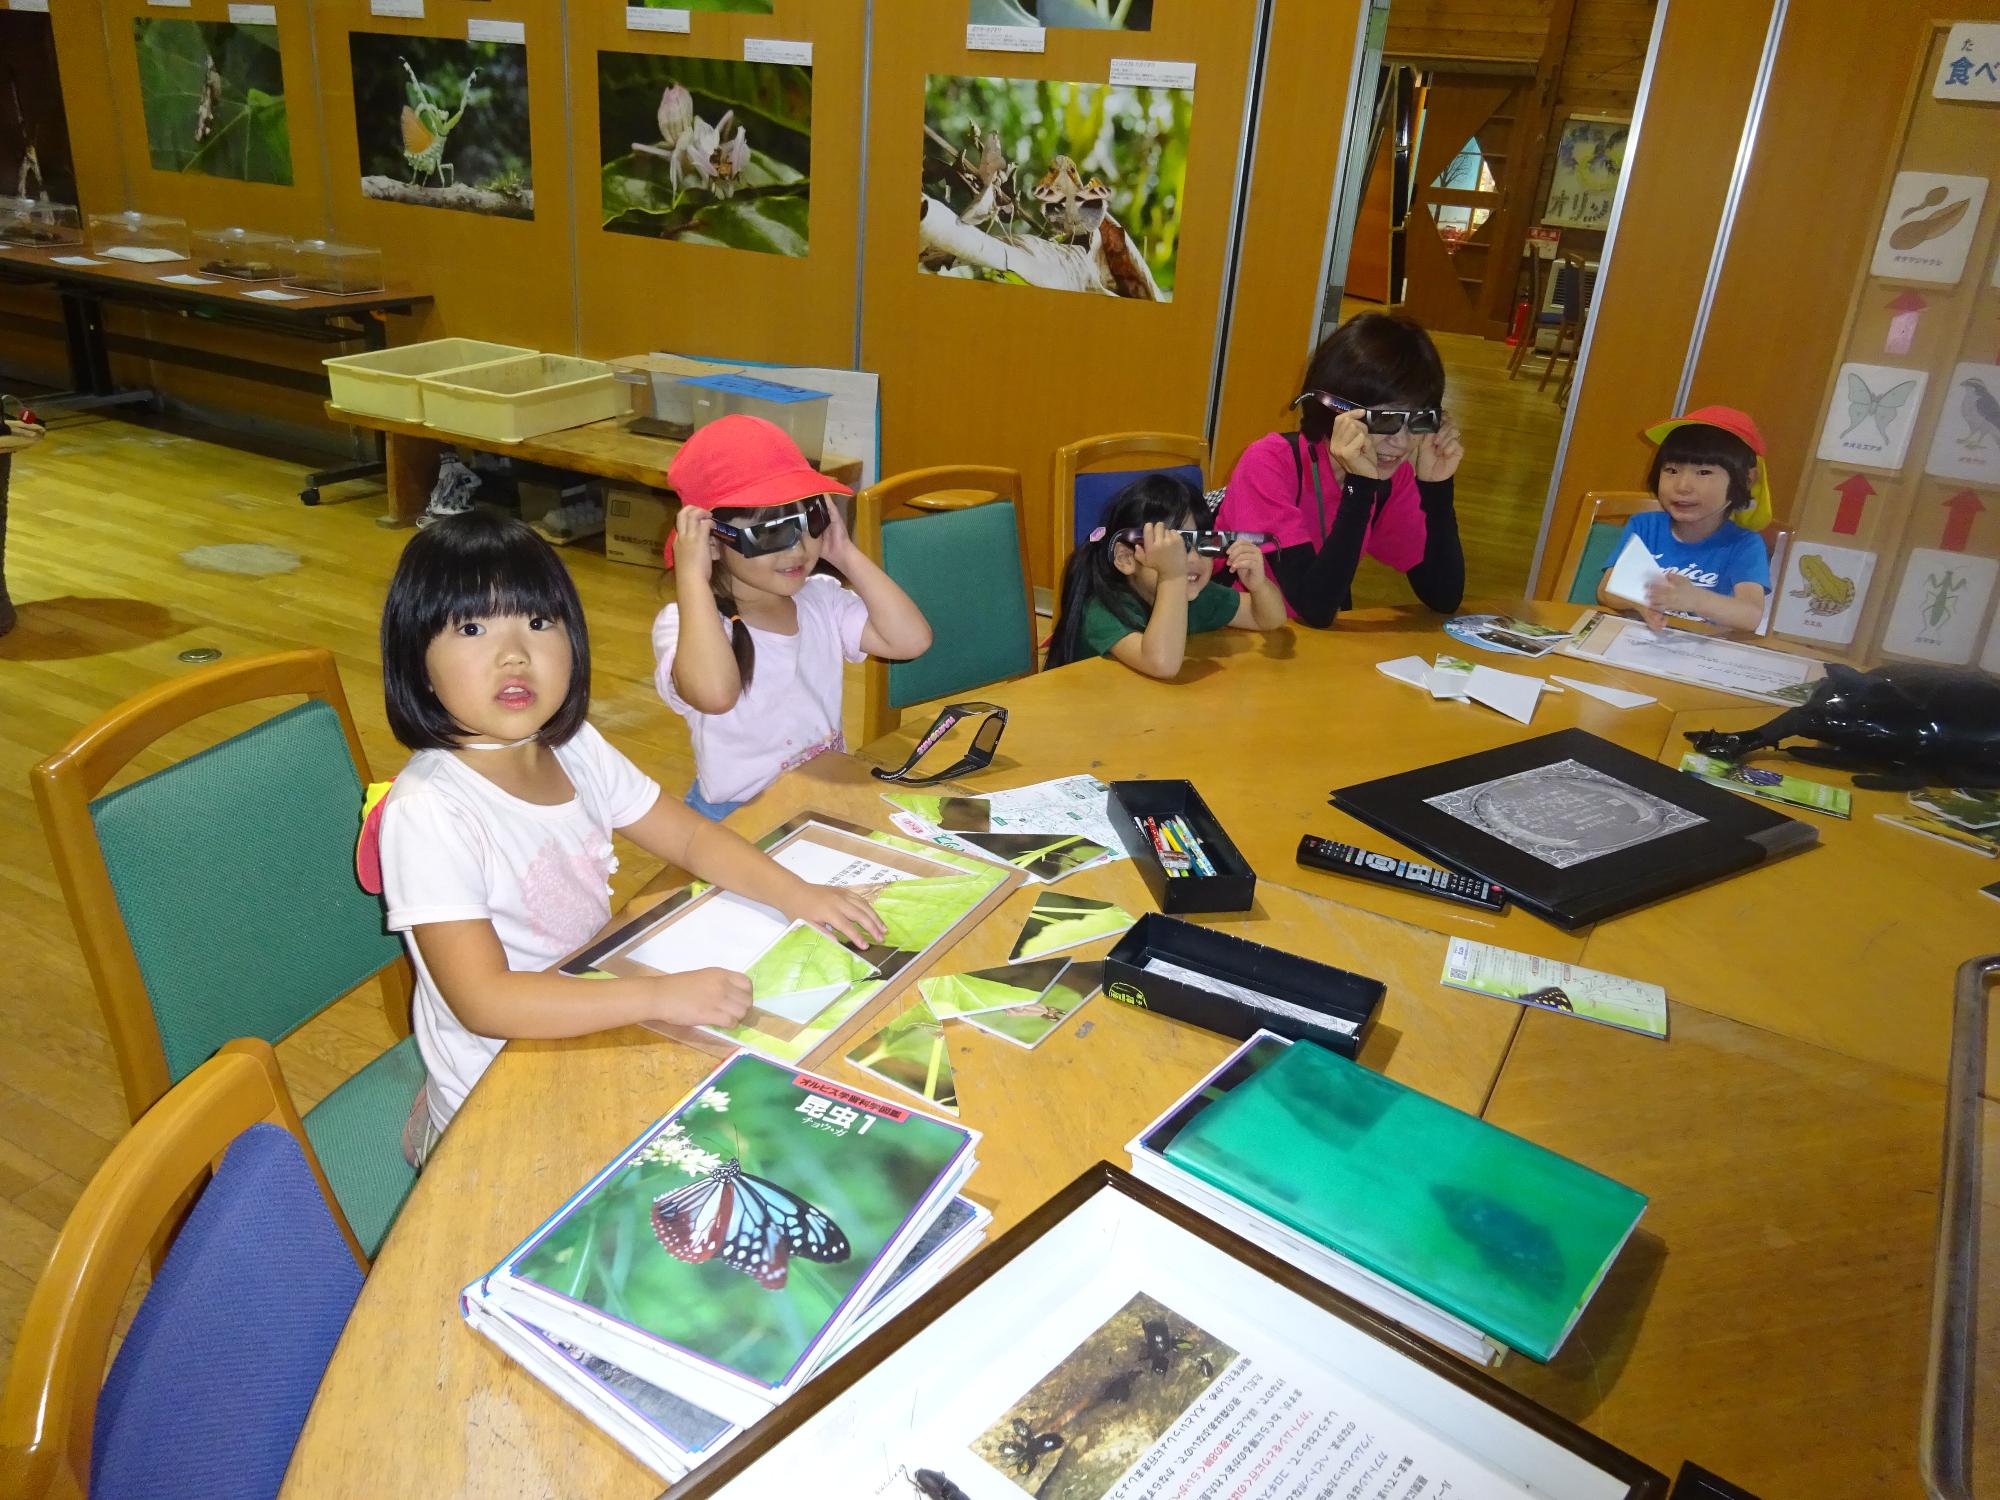 オオムラサキセンター内を見学し、本を読む5歳児の子どもたち